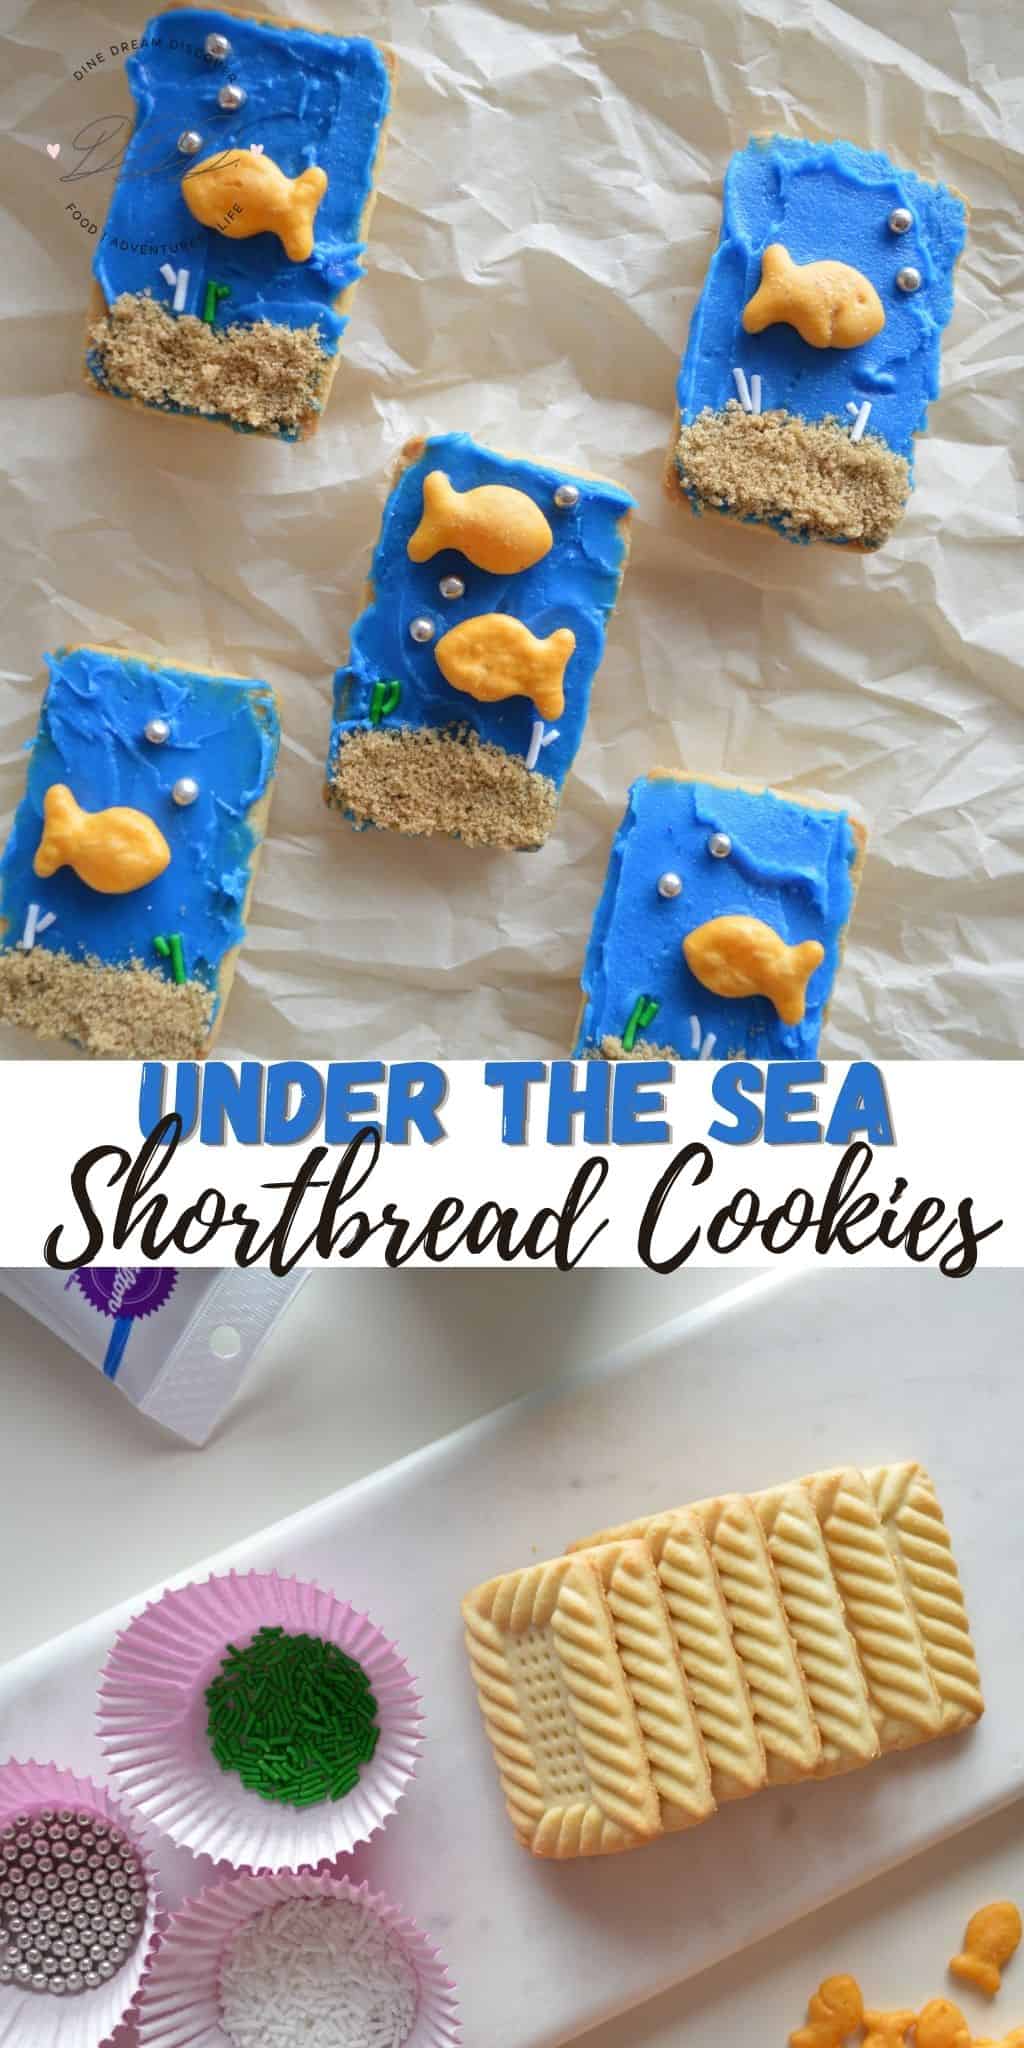 Under the Sea Shortbread Cookies